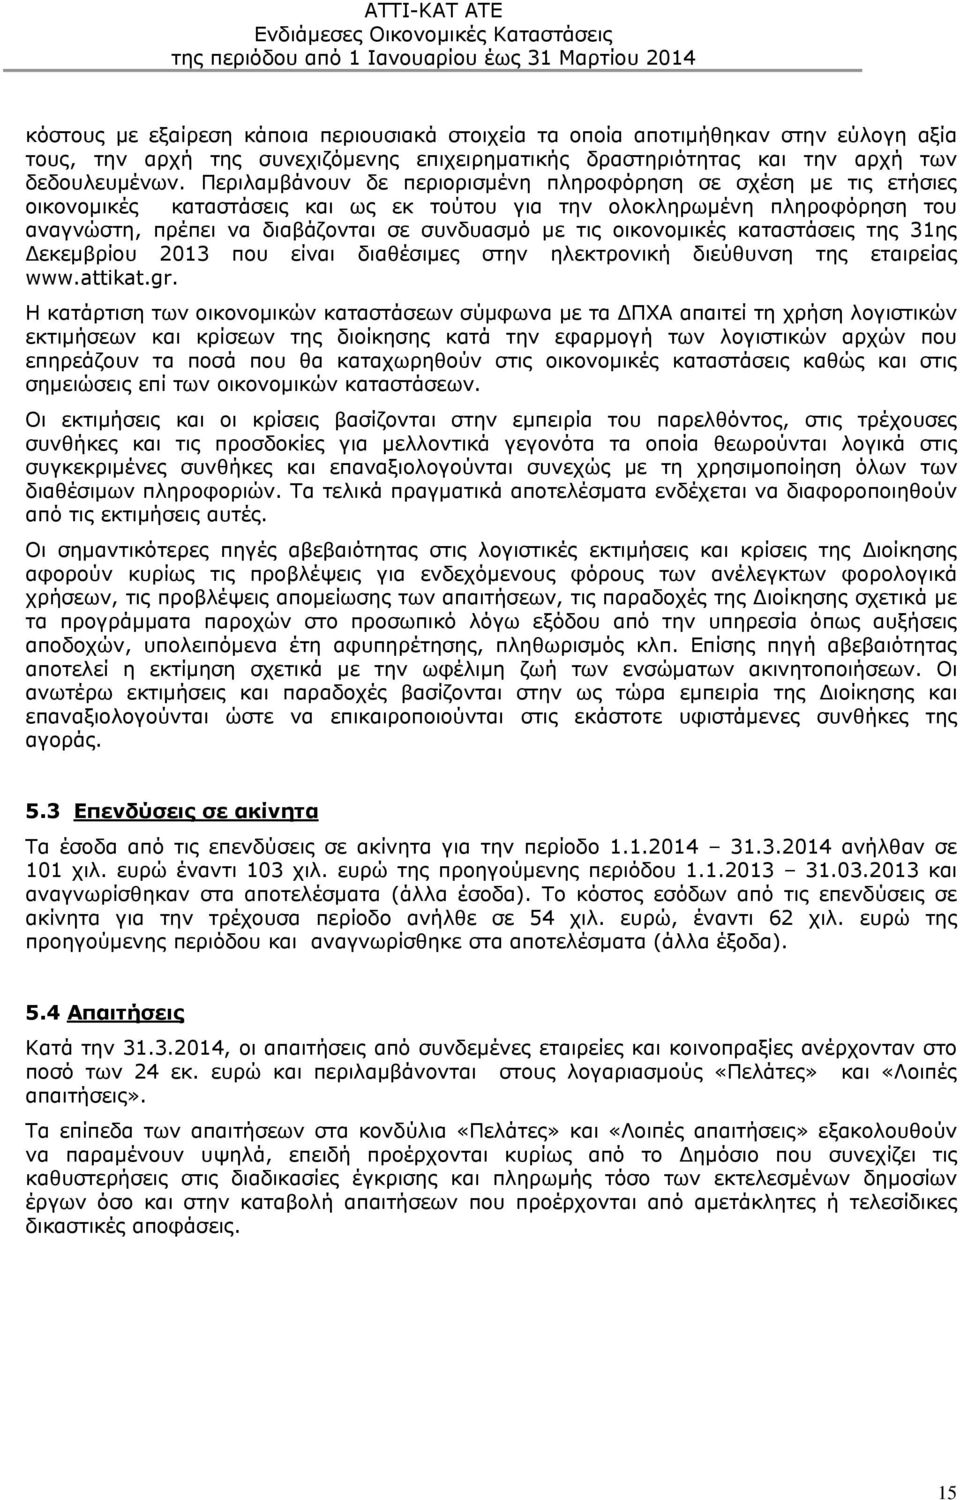 οικονομικές καταστάσεις της 31ης Δεκεμβρίου 2013 που είναι διαθέσιμες στην ηλεκτρονική διεύθυνση της εταιρείας www.attikat.gr.